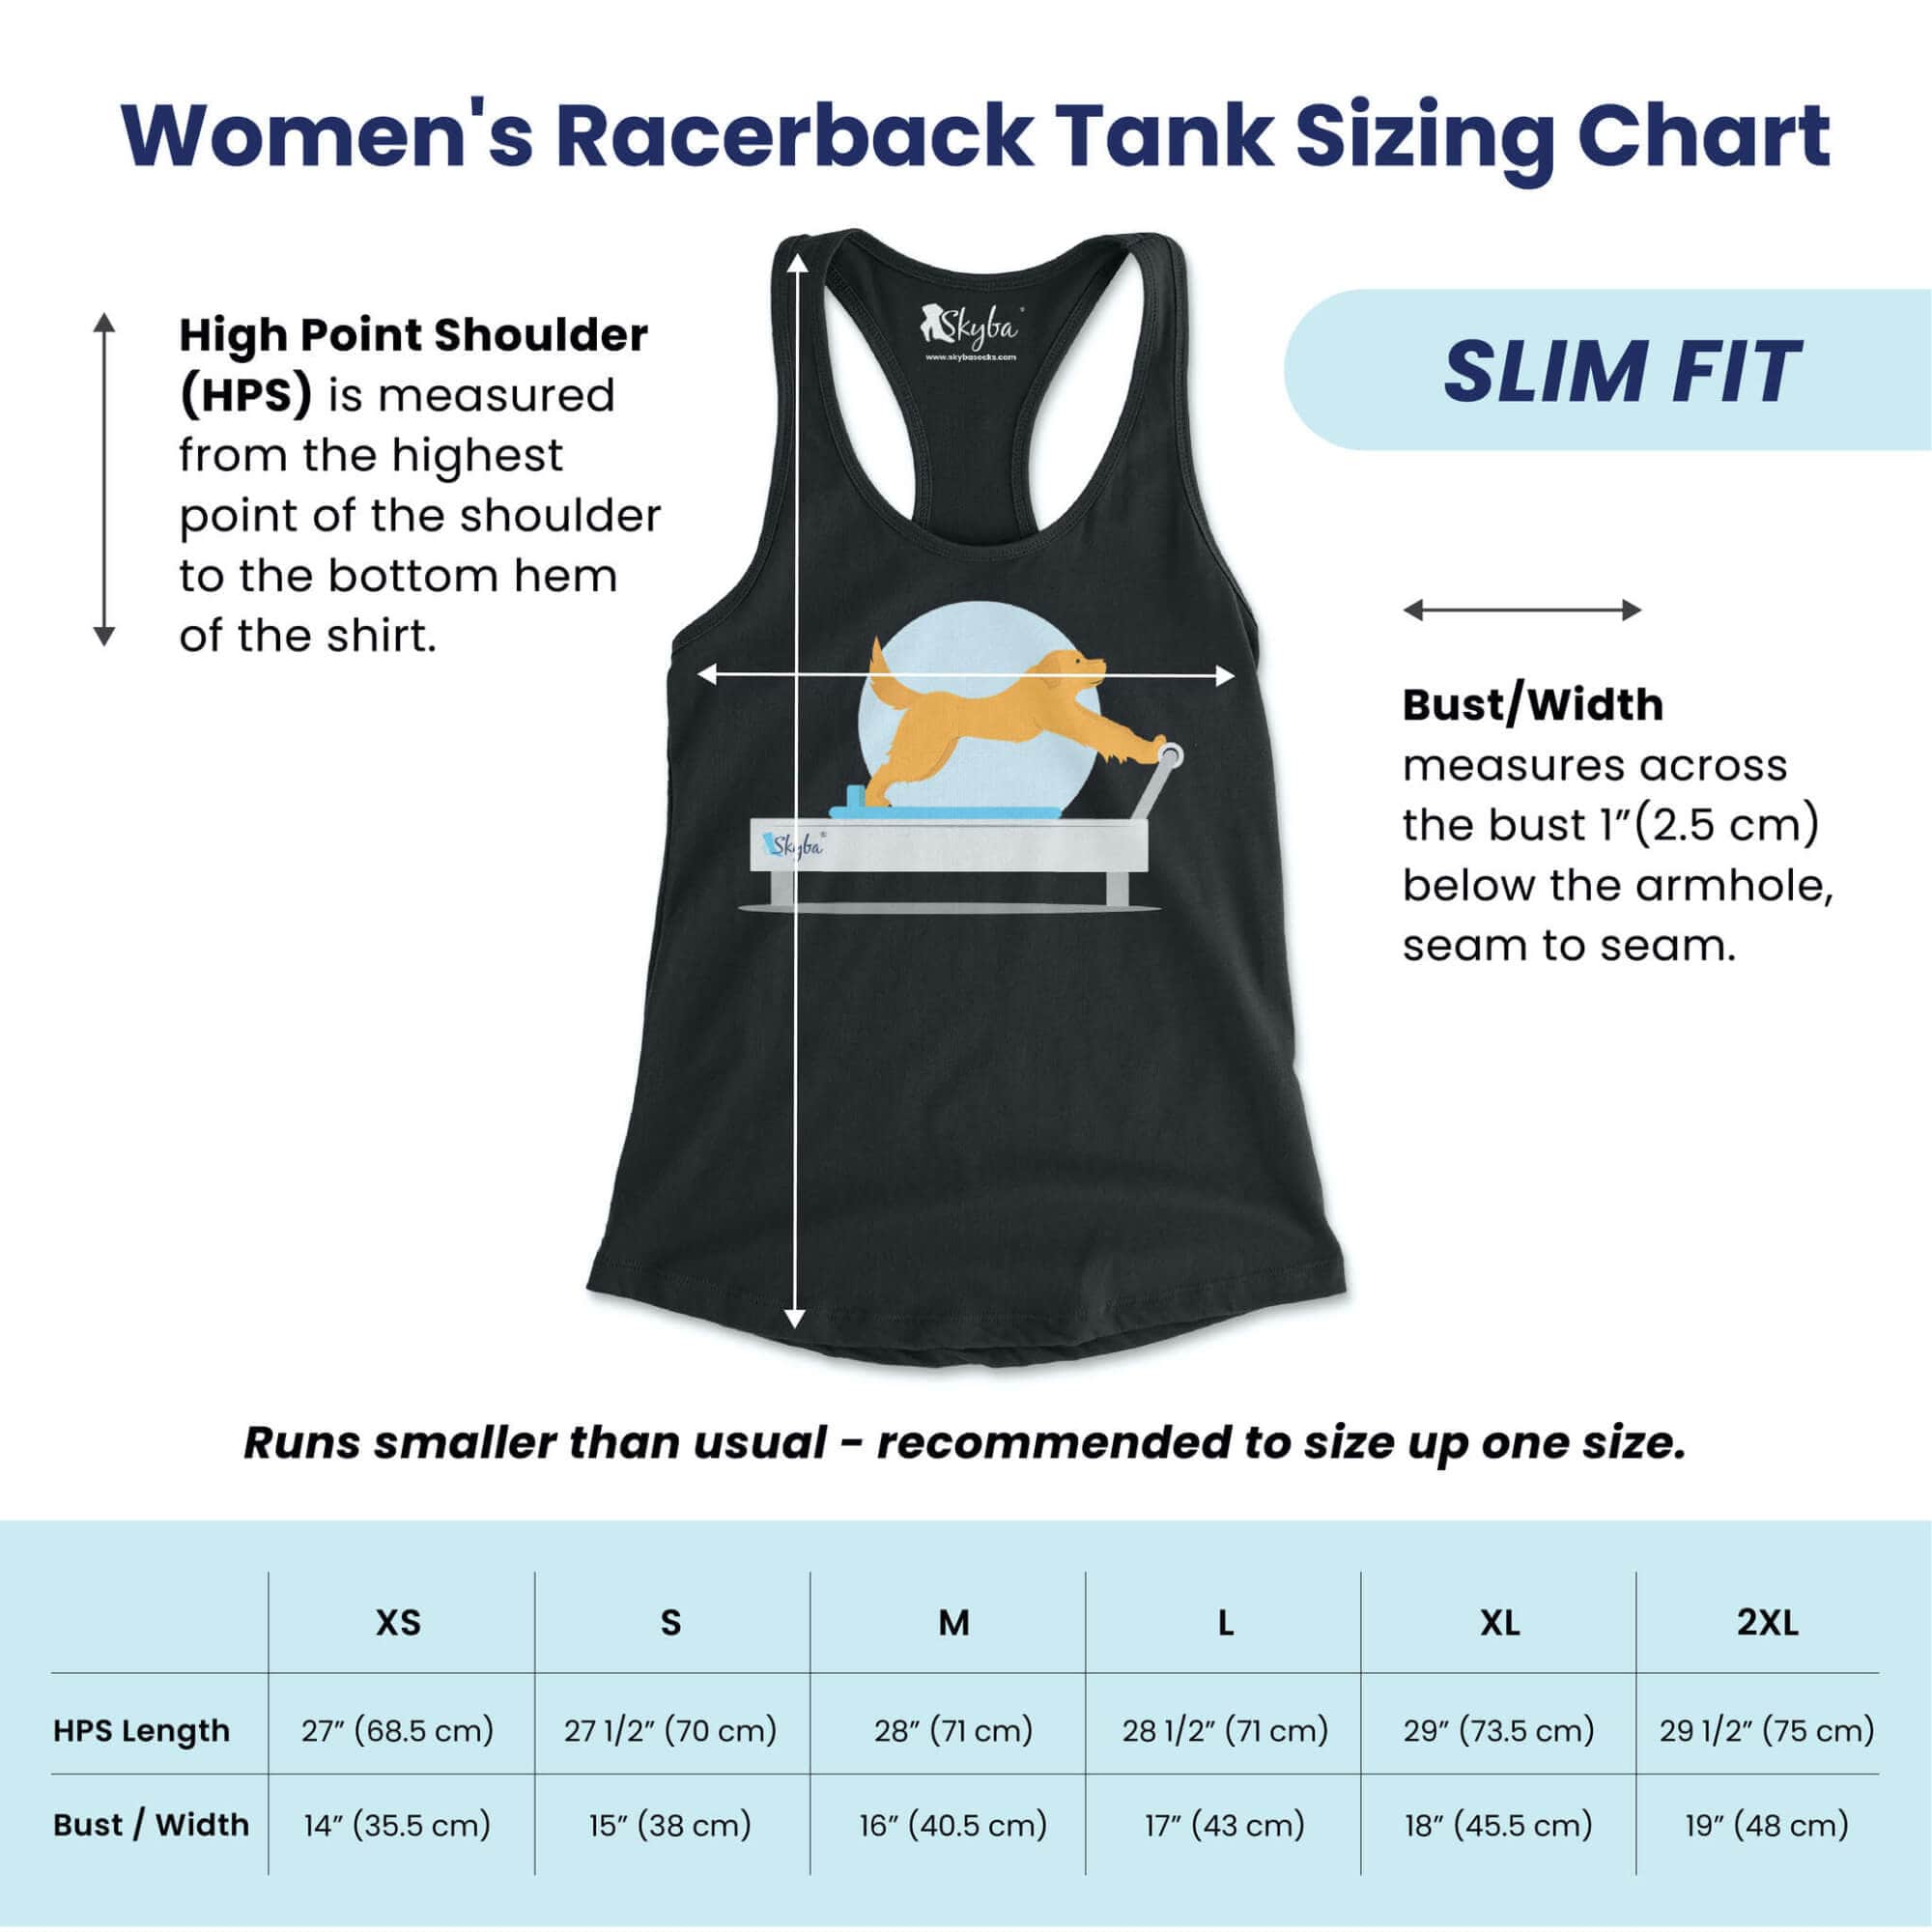 Panda Side Plank - Women's Slim Fit Tank Skyba Tank Top